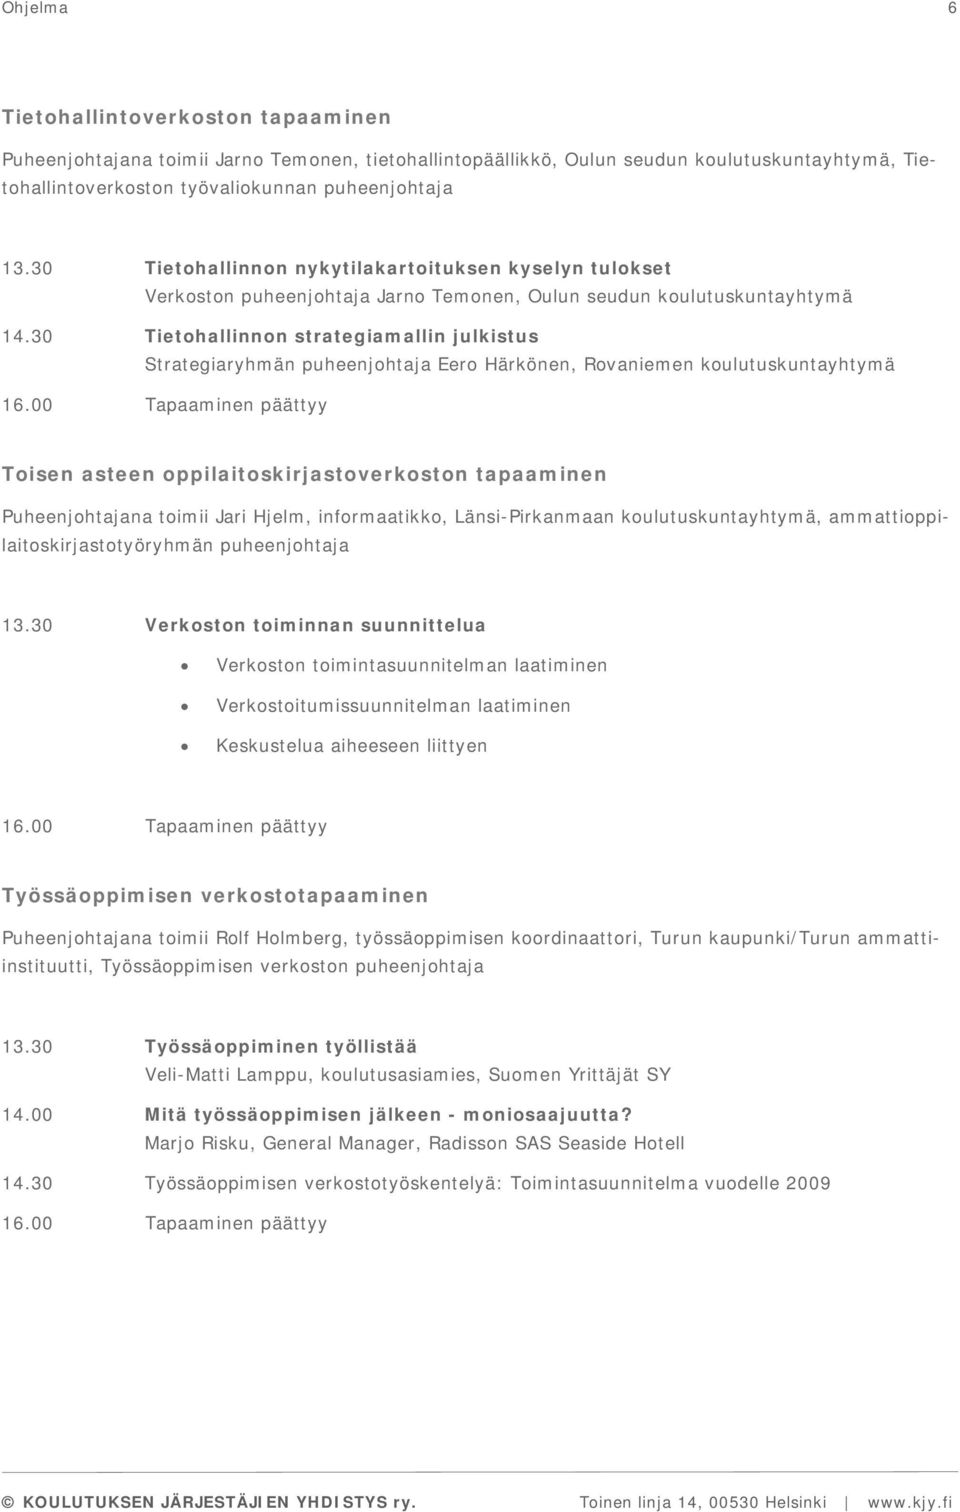 30 Tietohallinnon strategiamallin julkistus Strategiaryhmän puheenjohtaja Eero Härkönen, Rovaniemen koulutuskuntayhtymä Toisen asteen oppilaitoskirjastoverkoston tapaaminen Puheenjohtajana toimii